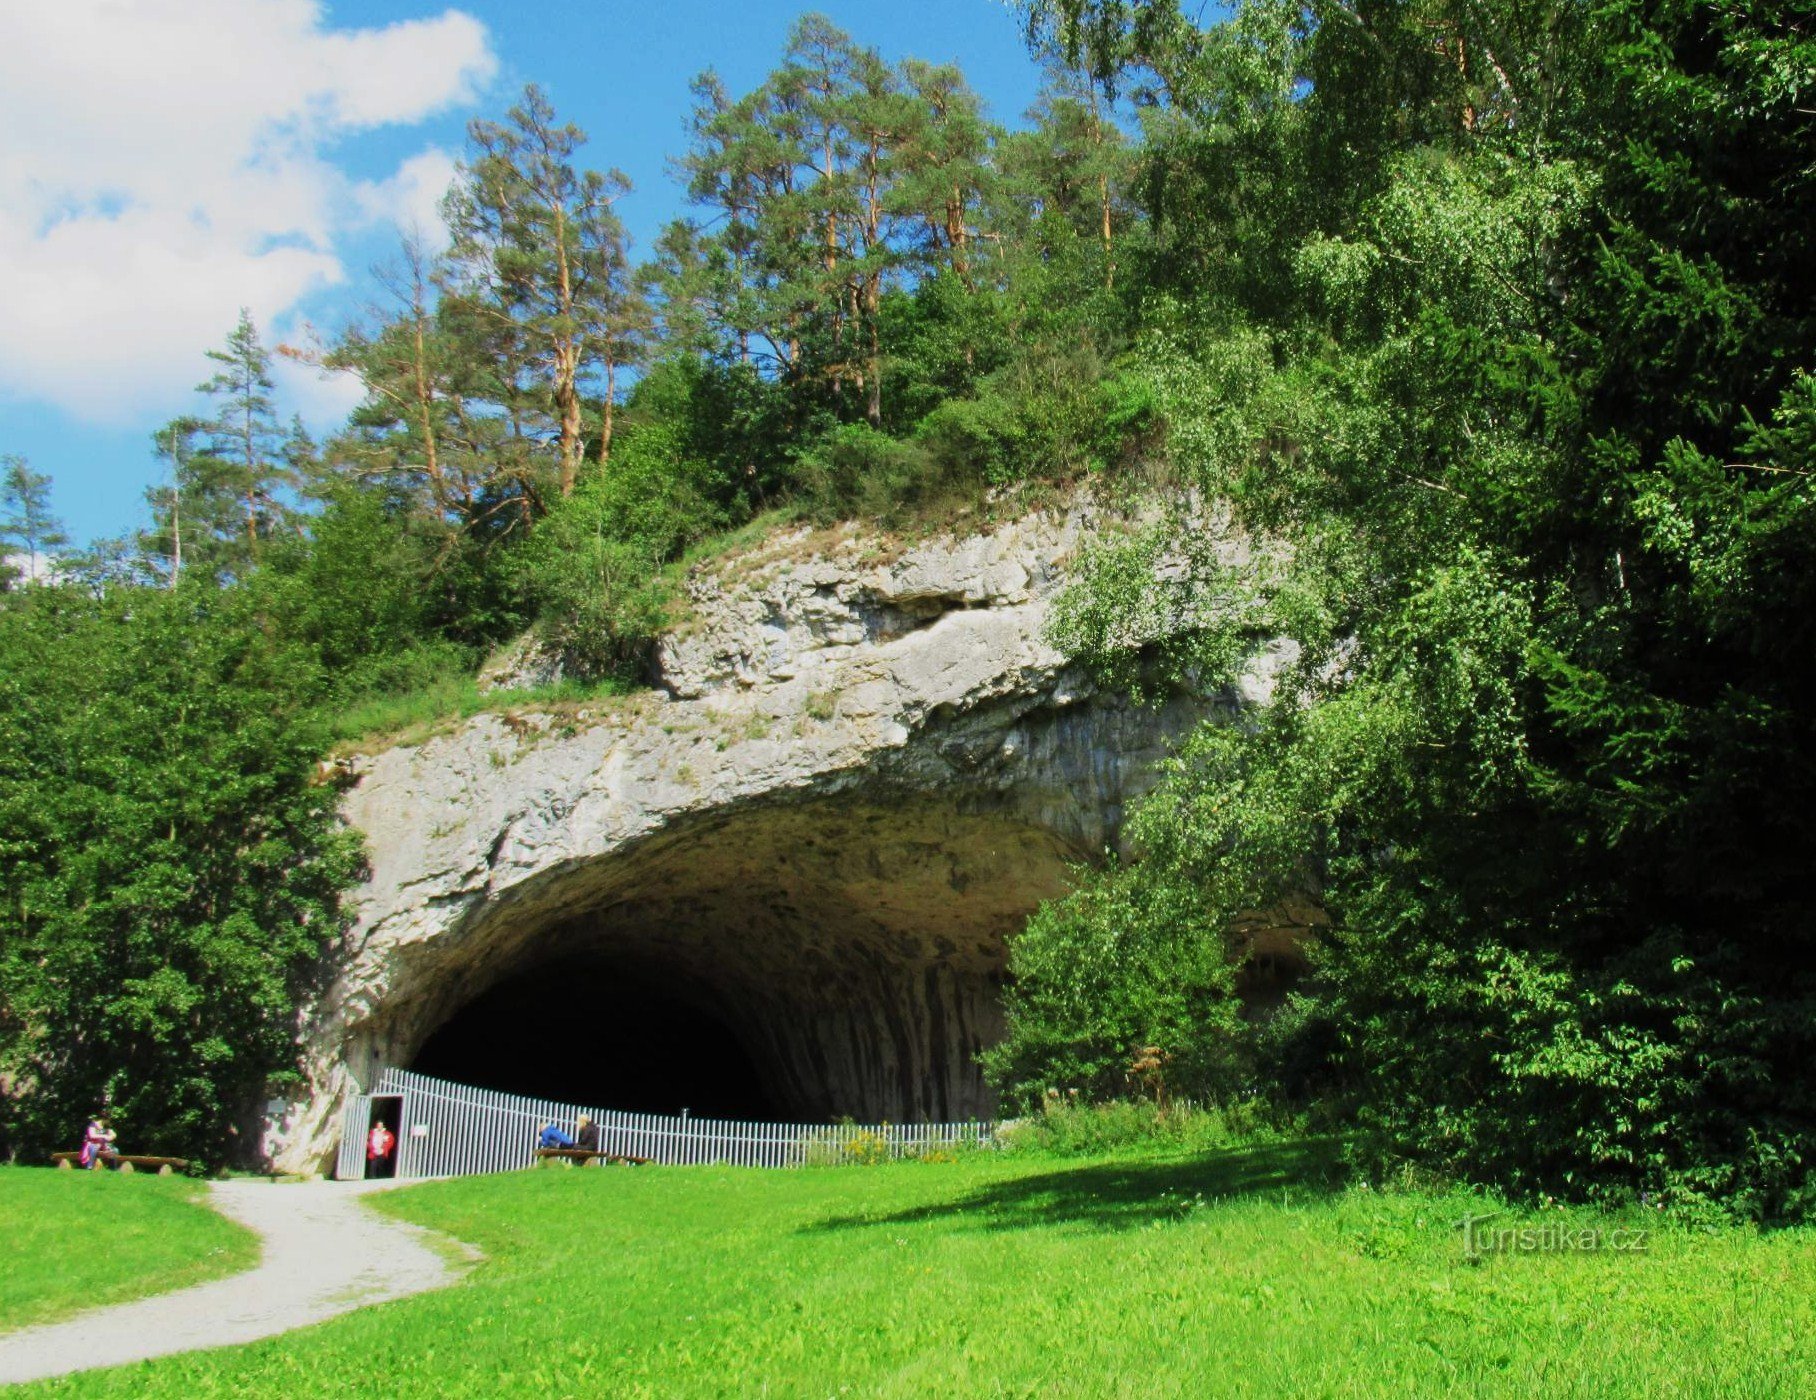 For experiences in Sloupsko - Šošůvské caves